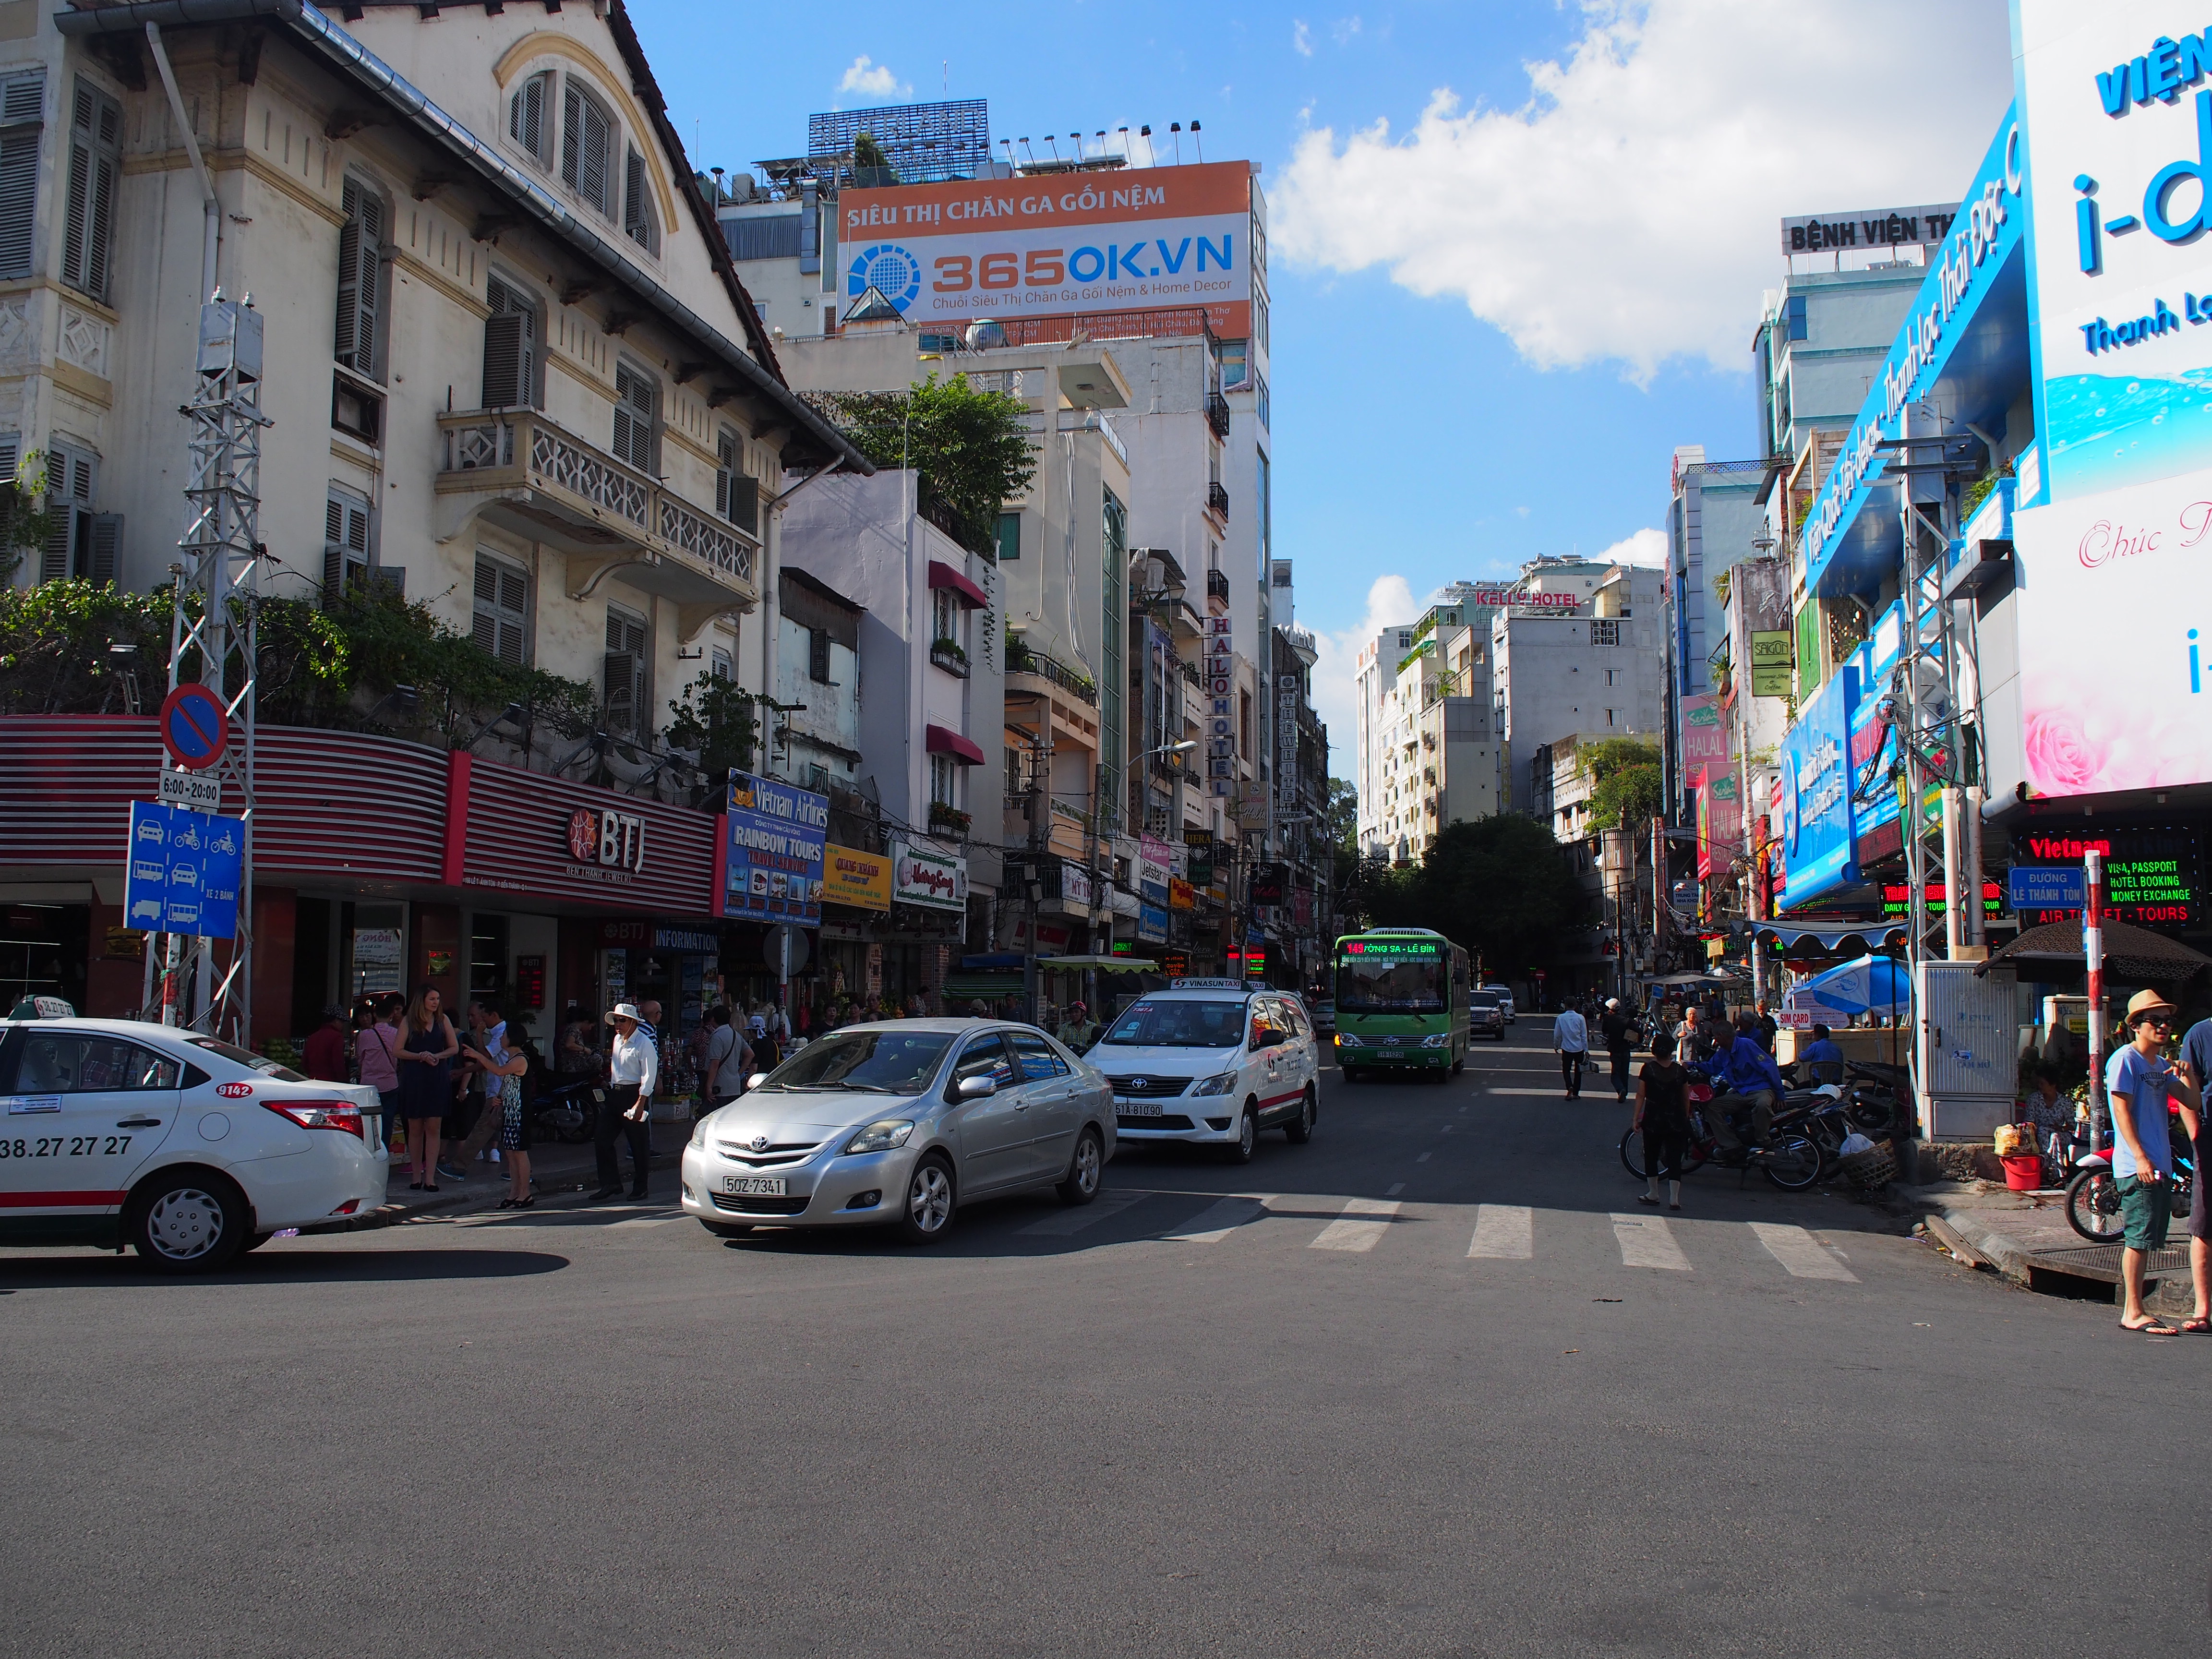 Thu Khoa Hoan通り